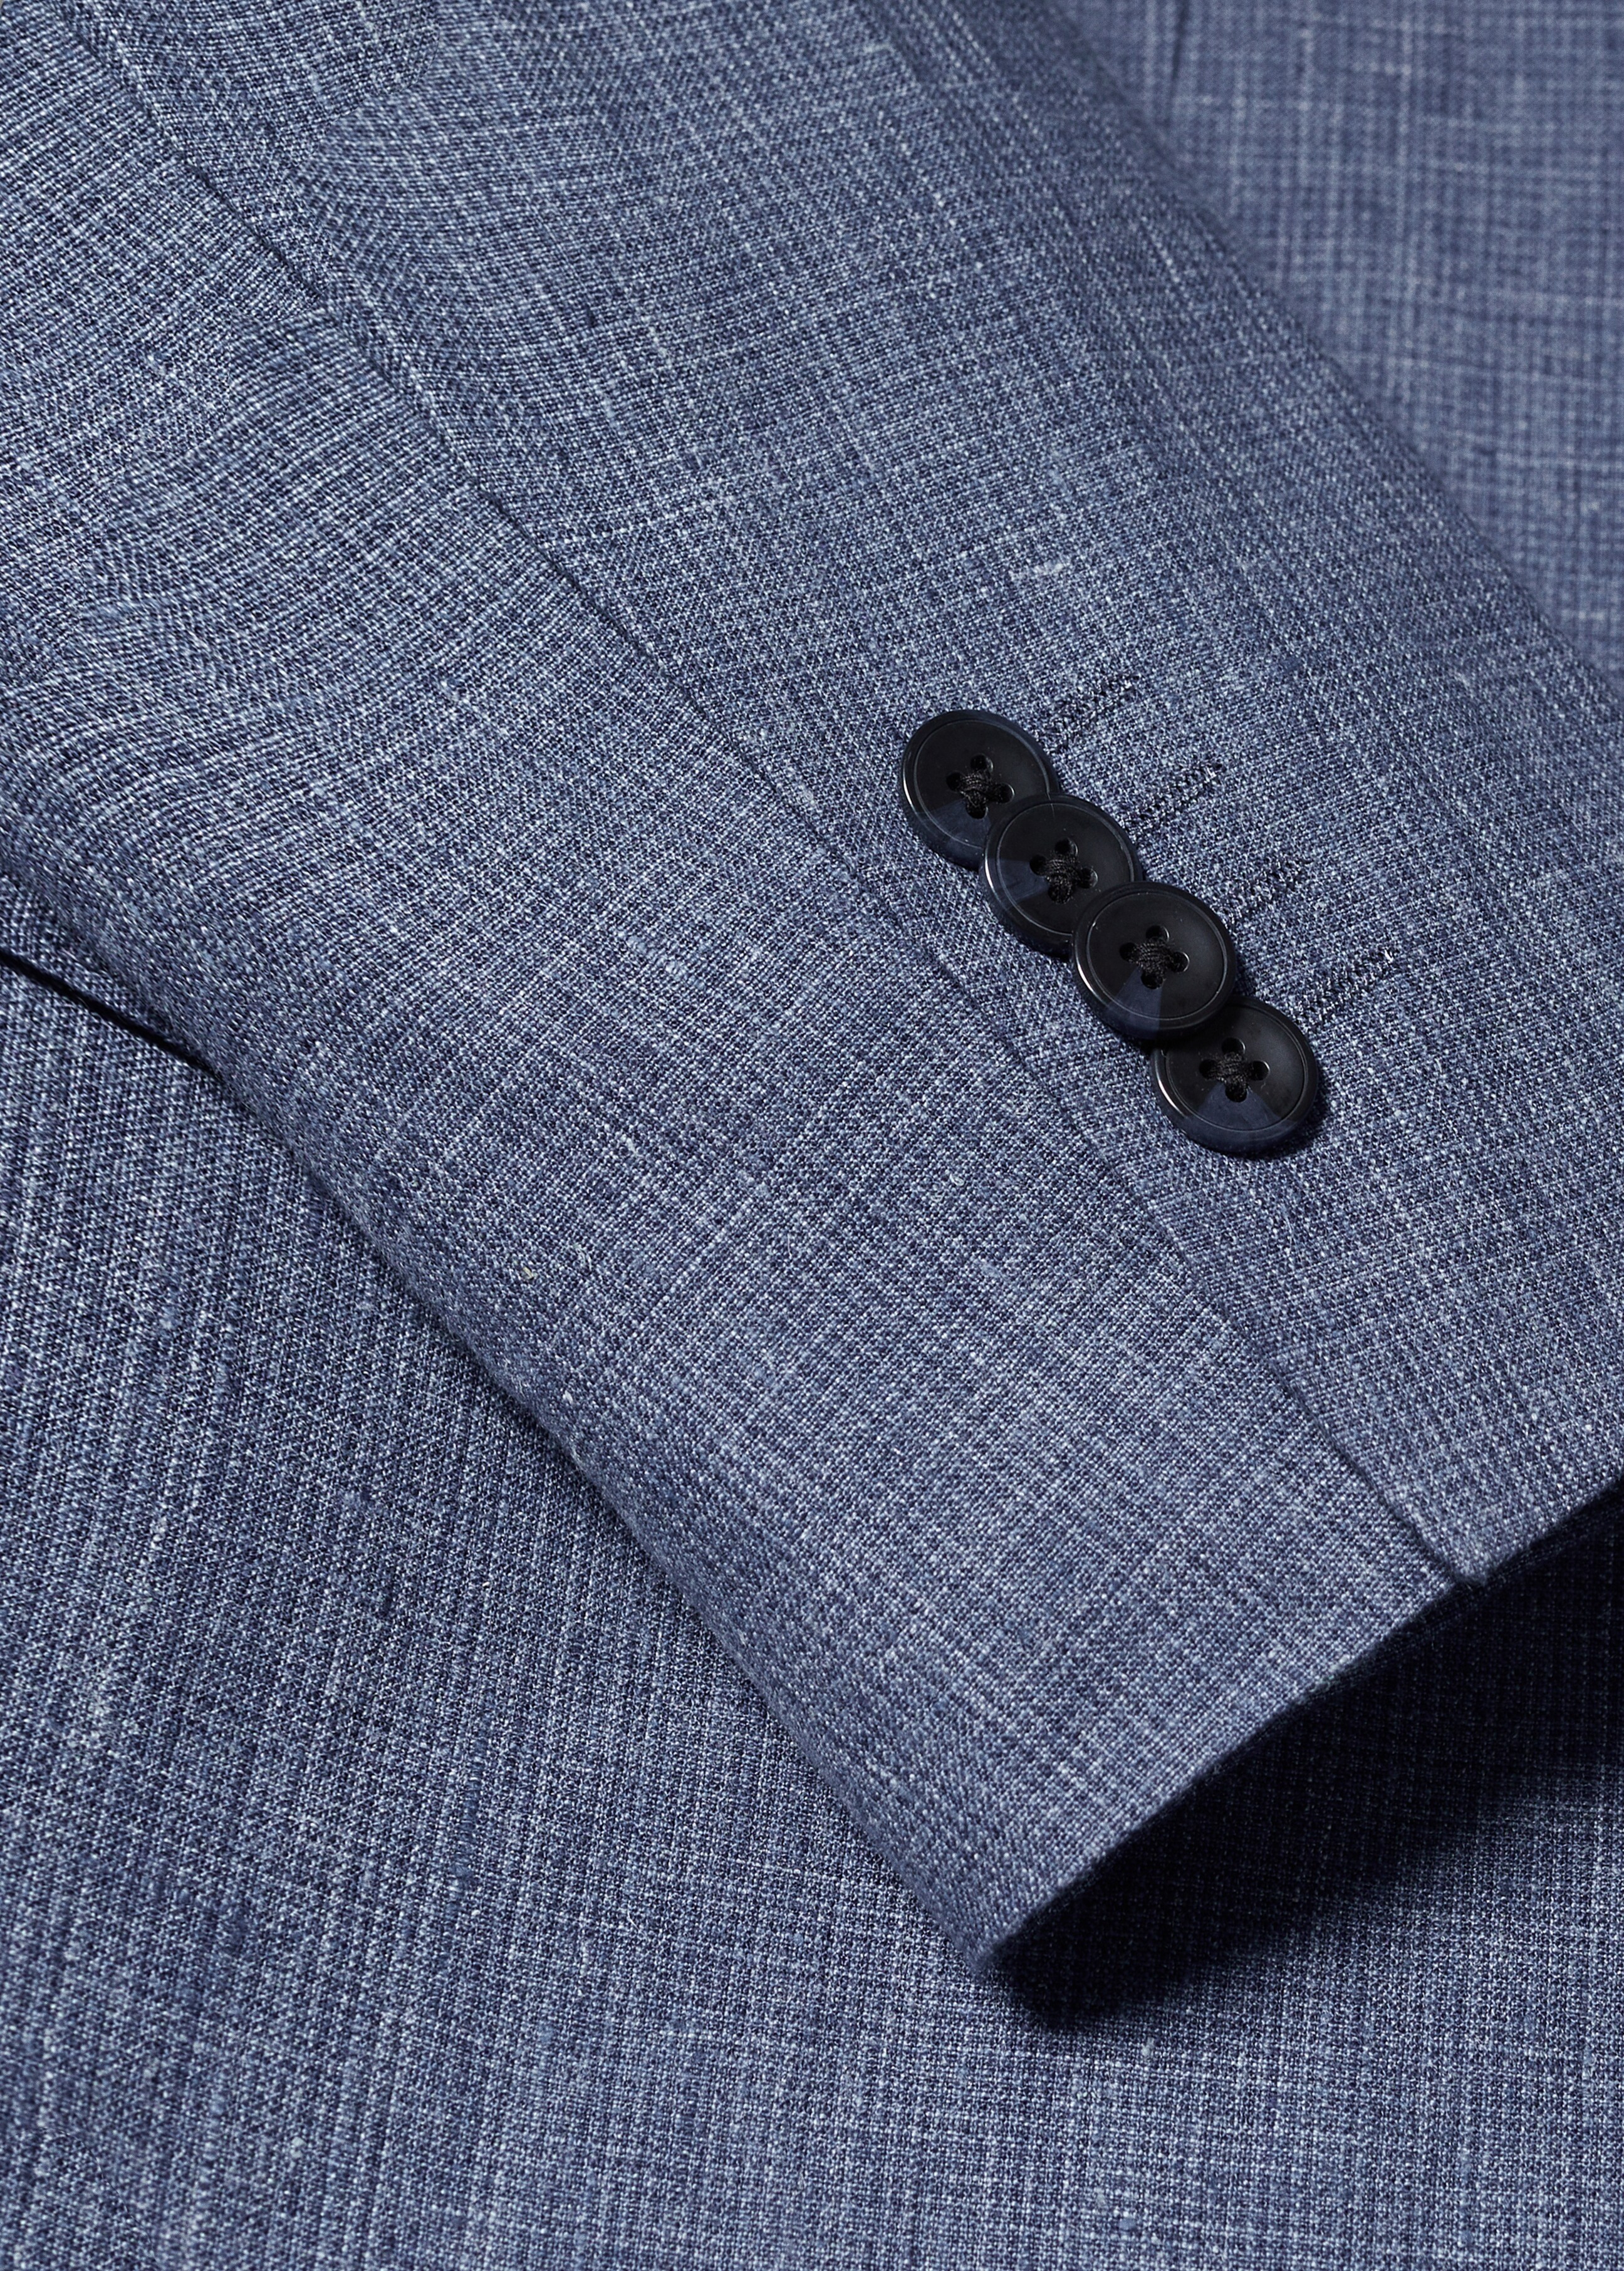 100% linen suit blazer - Details of the article 8